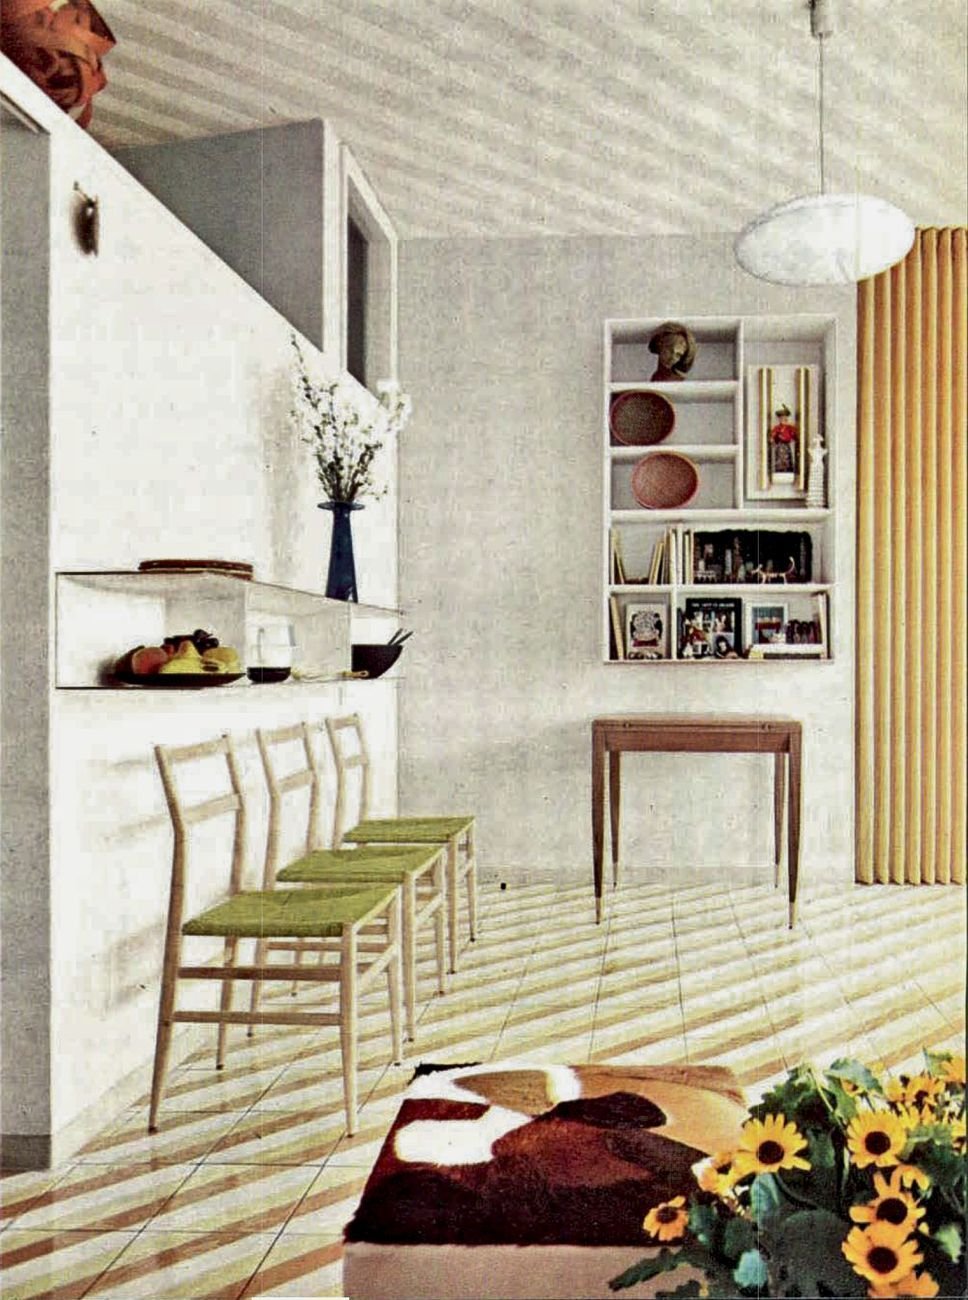 Gio Ponti, sistemazione del proprio appartamento nell’edificio di via Dezza 49, Domus 334, 1957, il tavolo da pranzo ripiegato addossato alla parete